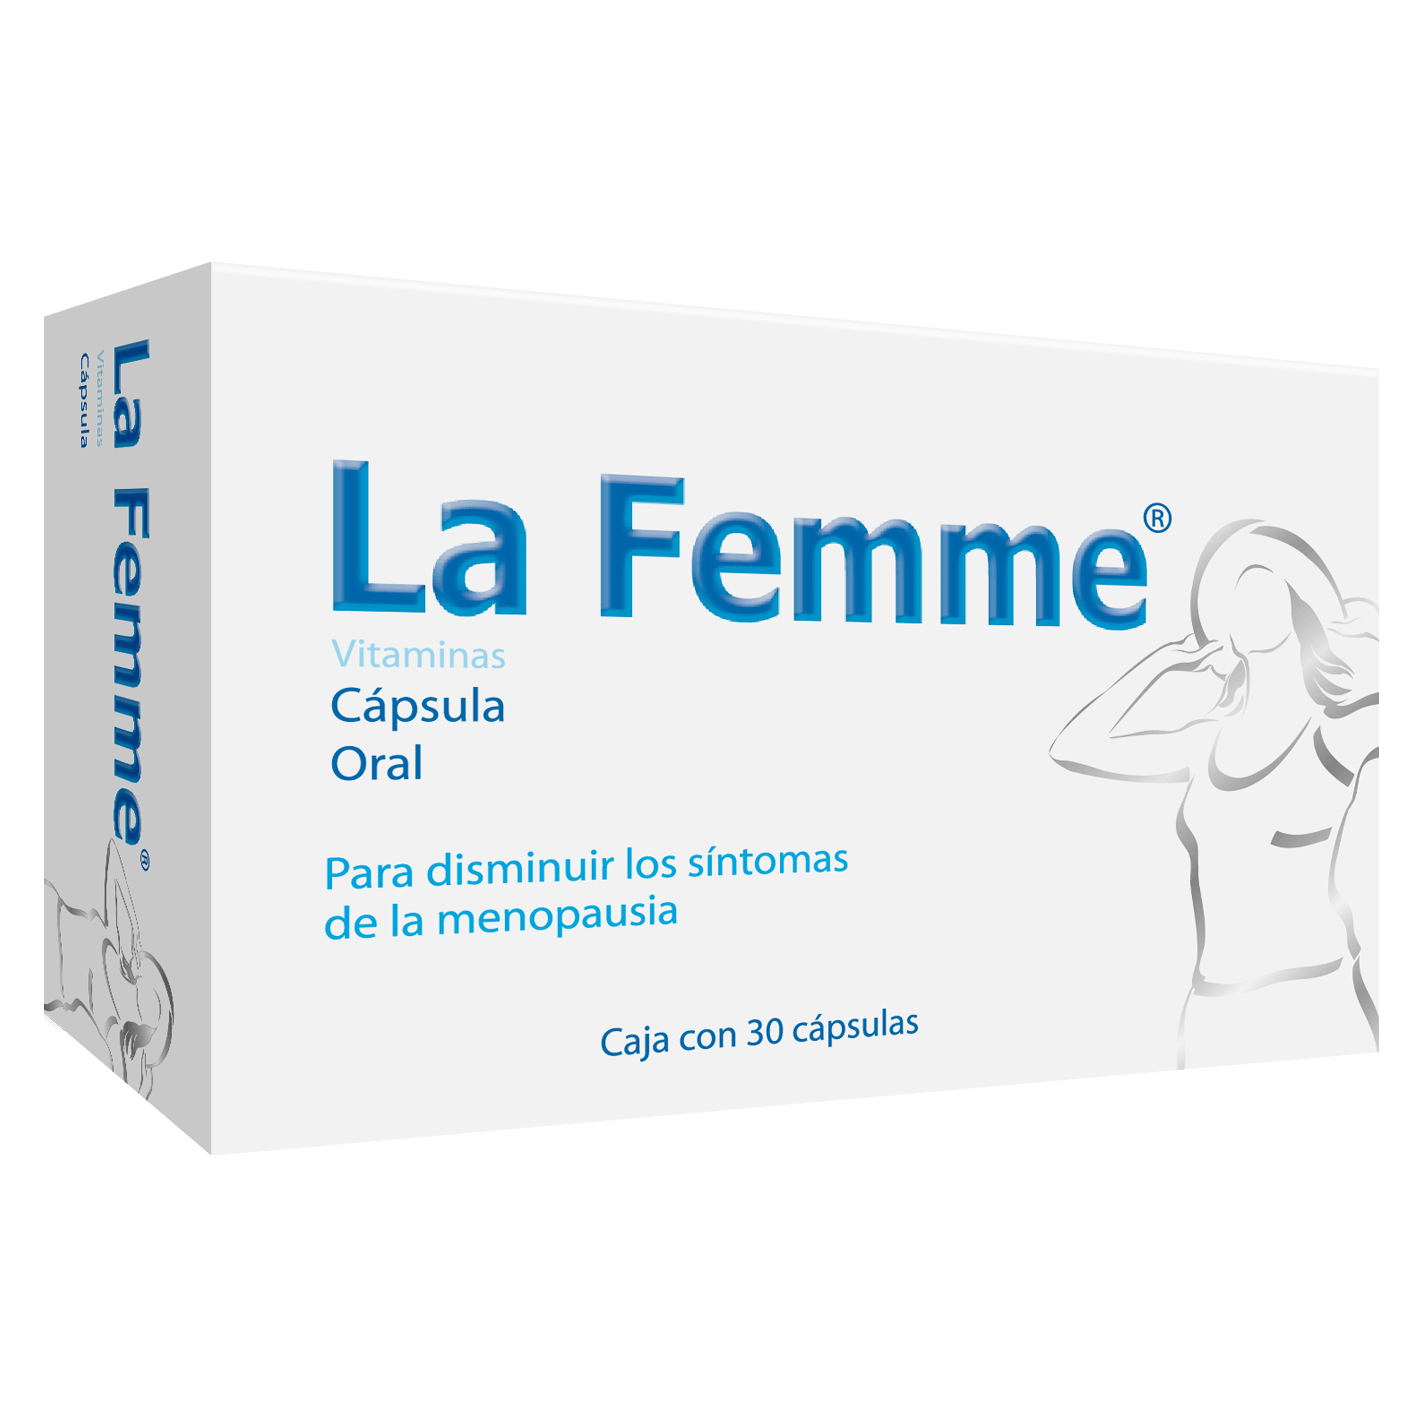 La Femme (Menopausia) Vitam Con 30 Capsulas (Prevefem)